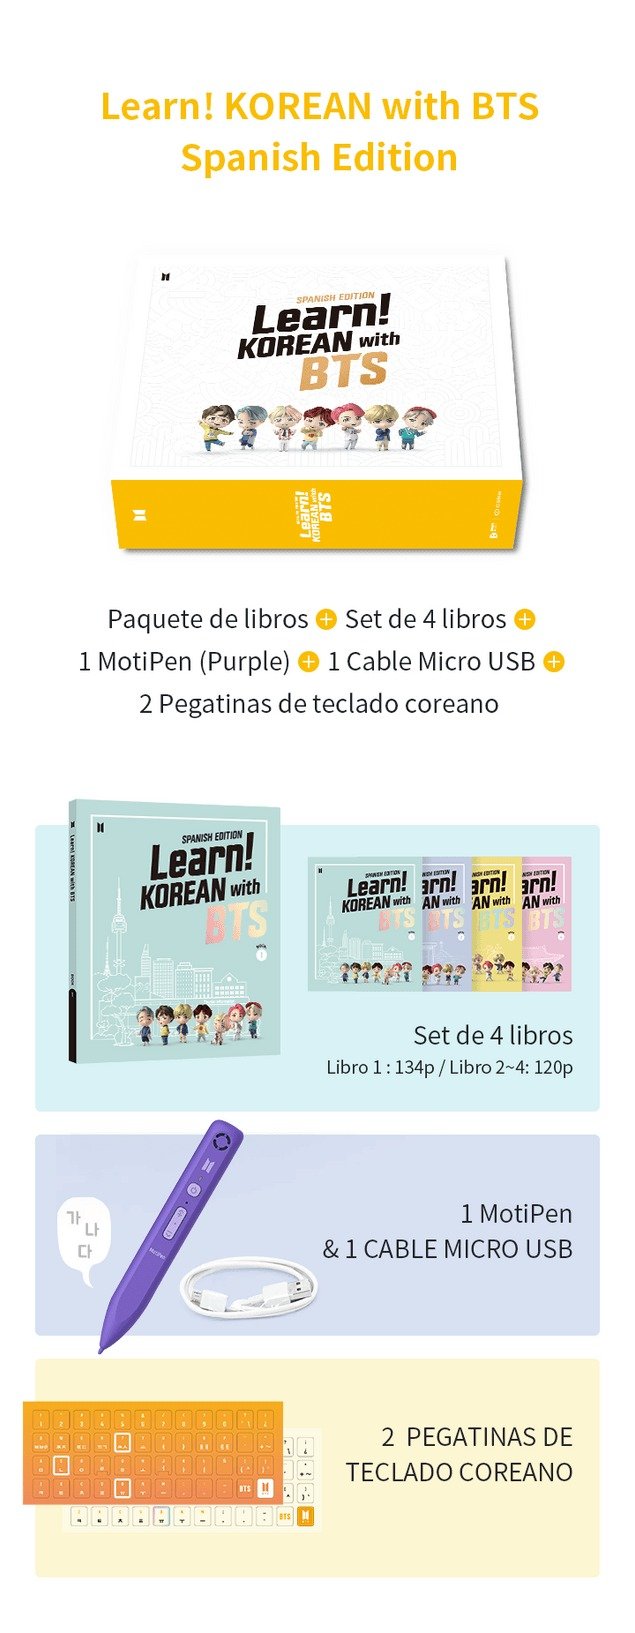 يتعلم! KOREAN with BTS Spanish Edition